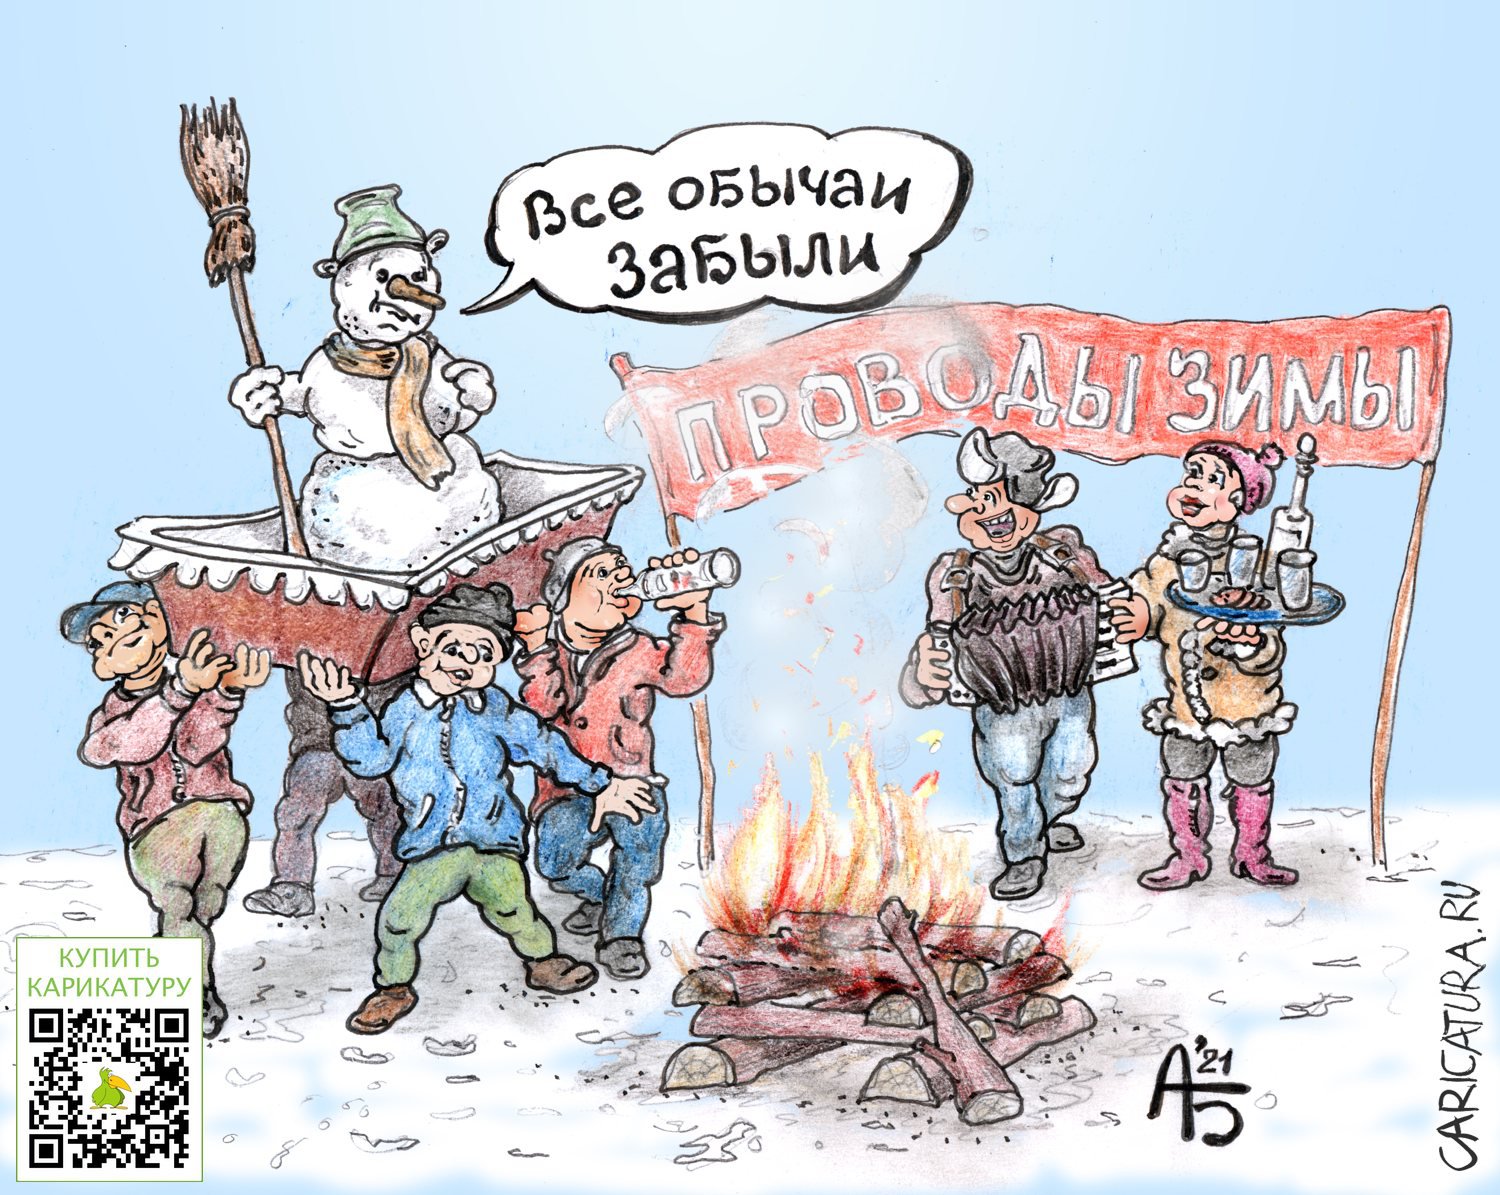 Карикатура "Проводы зимы", Александр Богданов